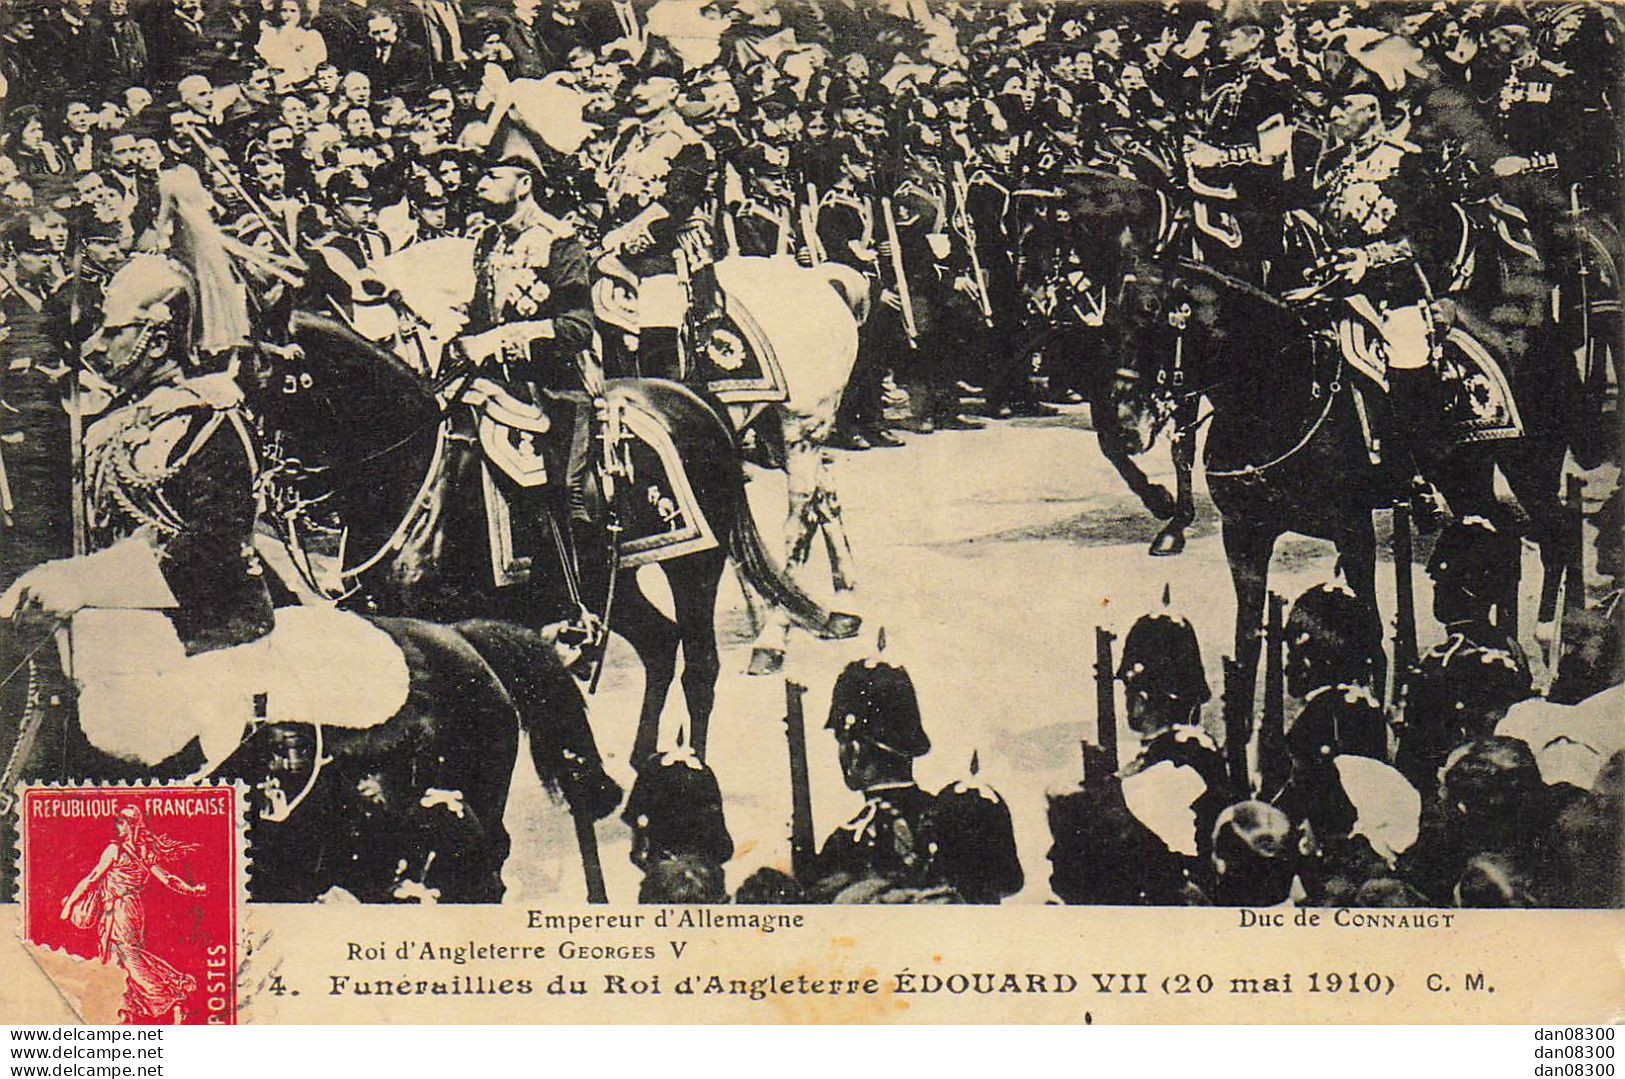 FUNERAILLES DU ROI D'ANGLETERRE EDOUARD VII 20 MAI 1910 EMPEREUR D'ALLEMAGNE ROI D"ANGLETERRE GEORGES V DUC DE CONNAUGT - Funérailles